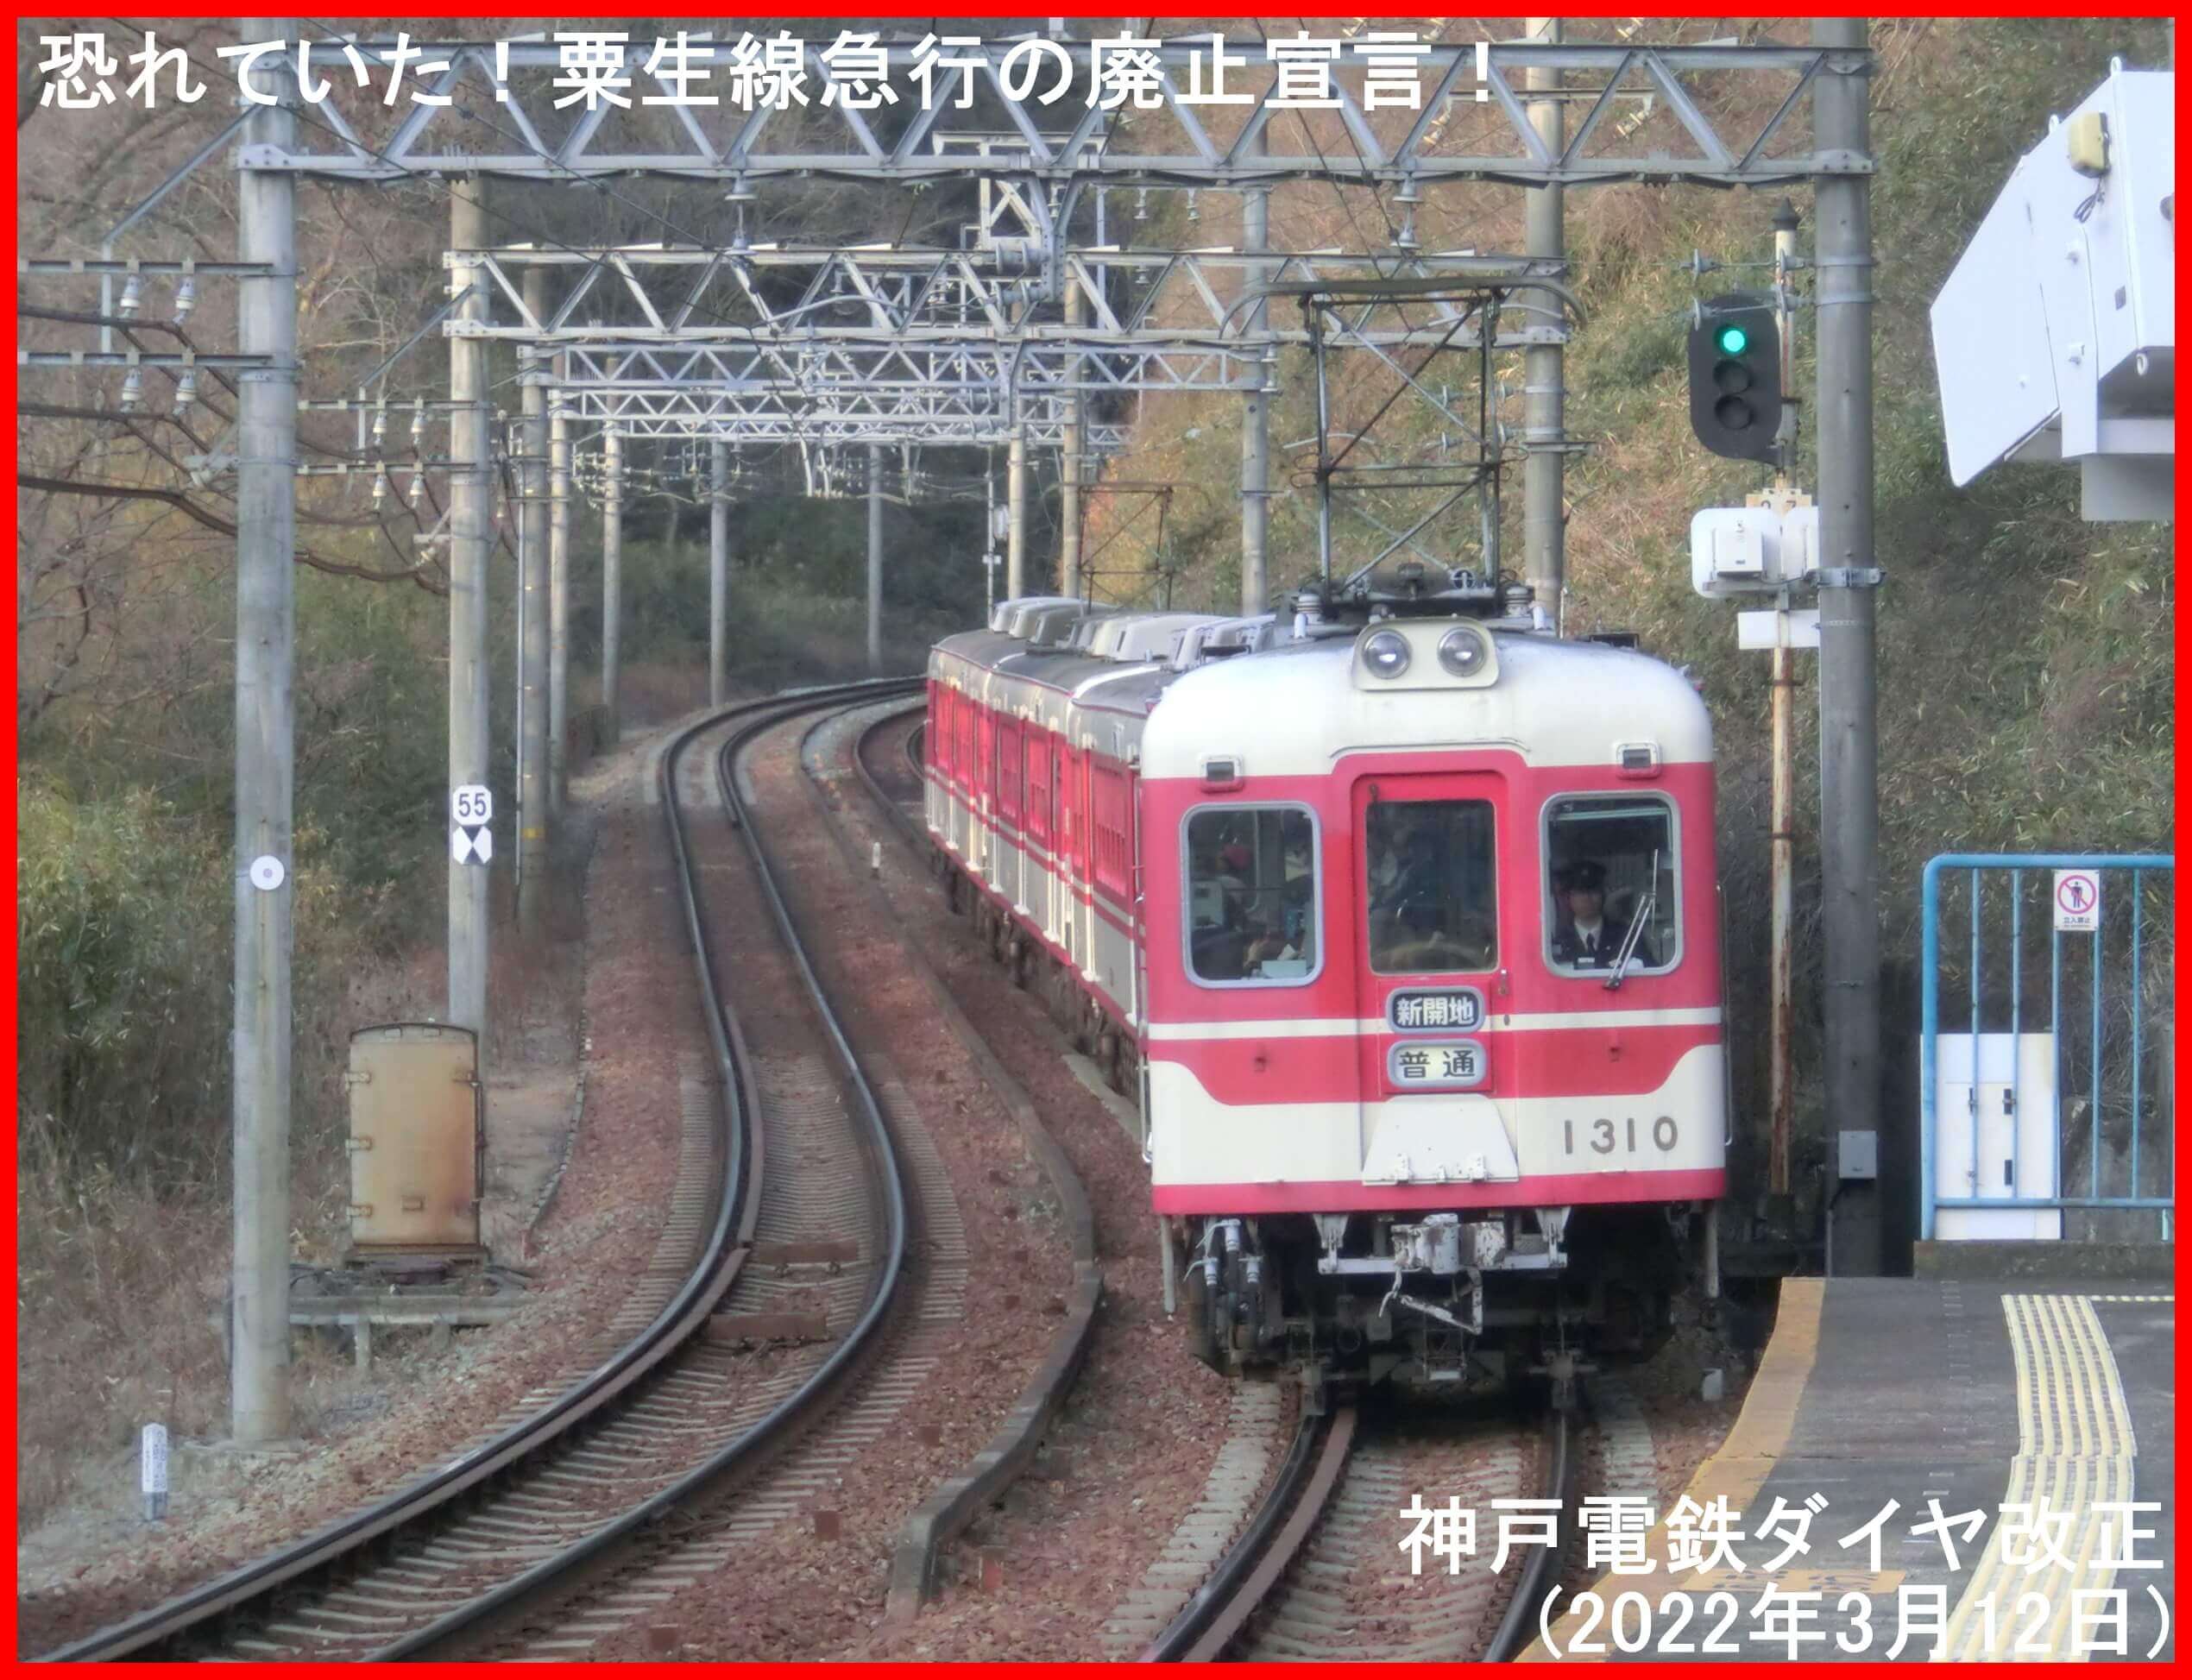 恐れていた！粟生線急行の廃止宣言！　神戸電鉄ダイヤ改正(2022年3月12日)